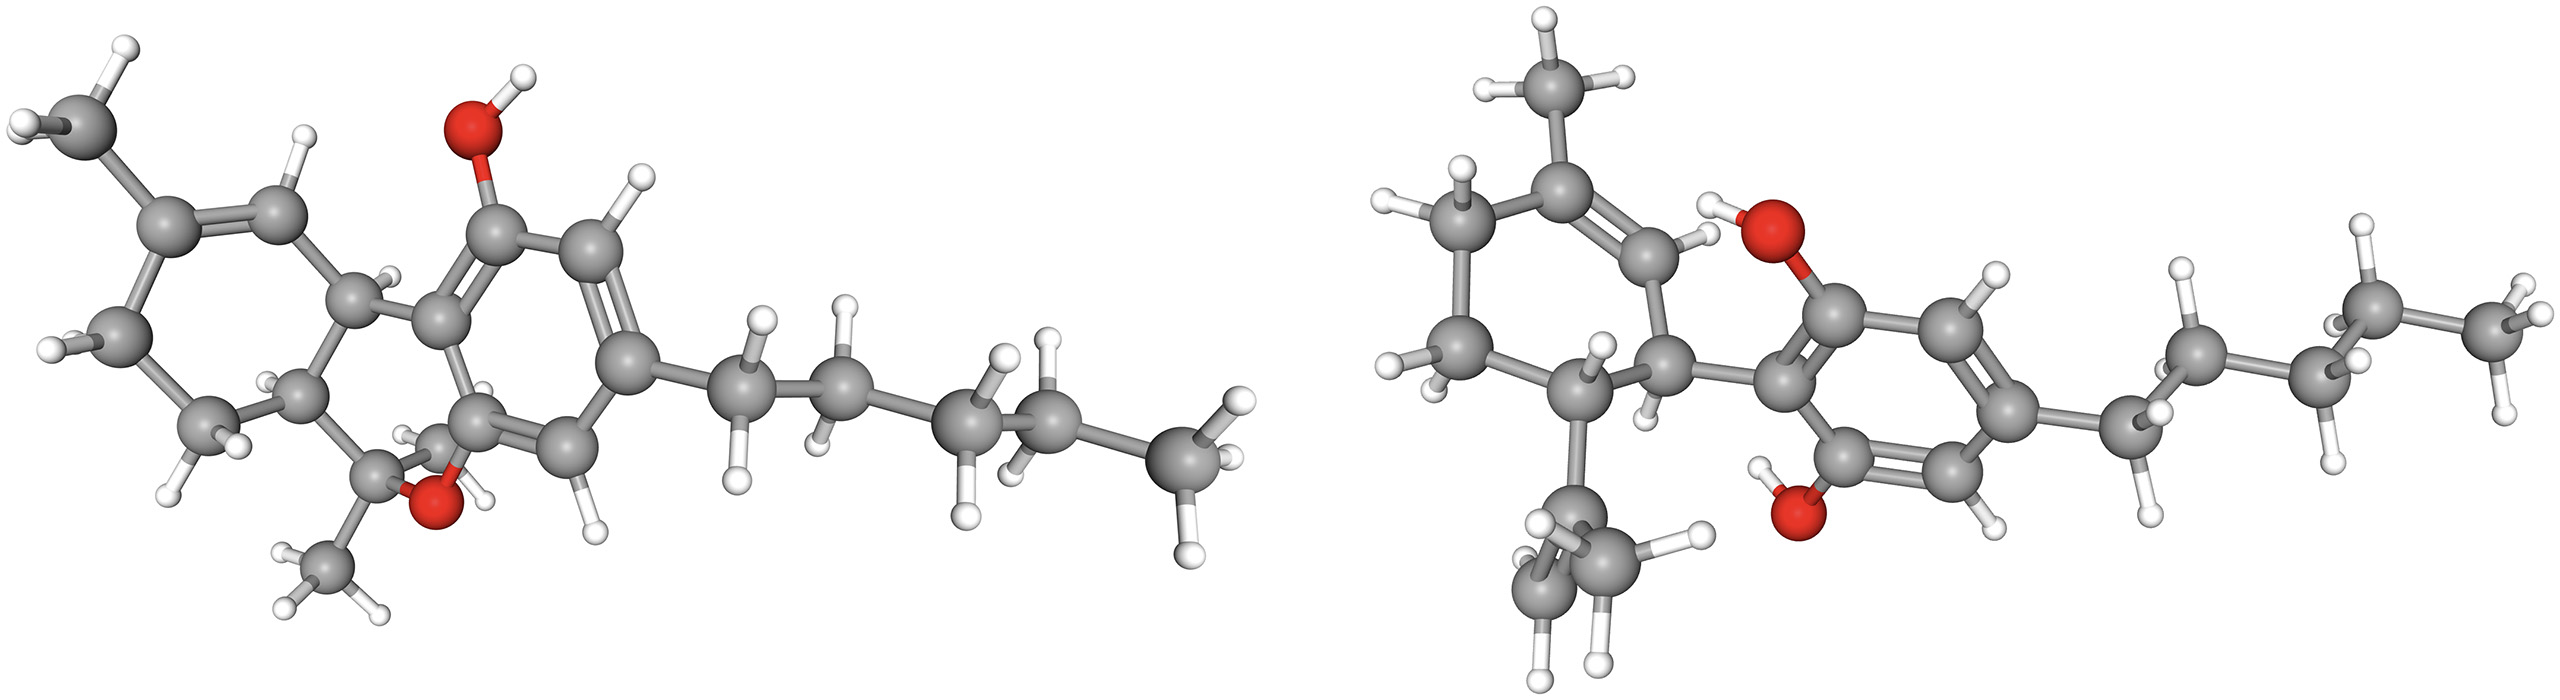 représentation 3D d'une molécule de Δ-9-tétrahydrocannabinol (THC, à gauche) et de cannabidiol (CBD, à droite)